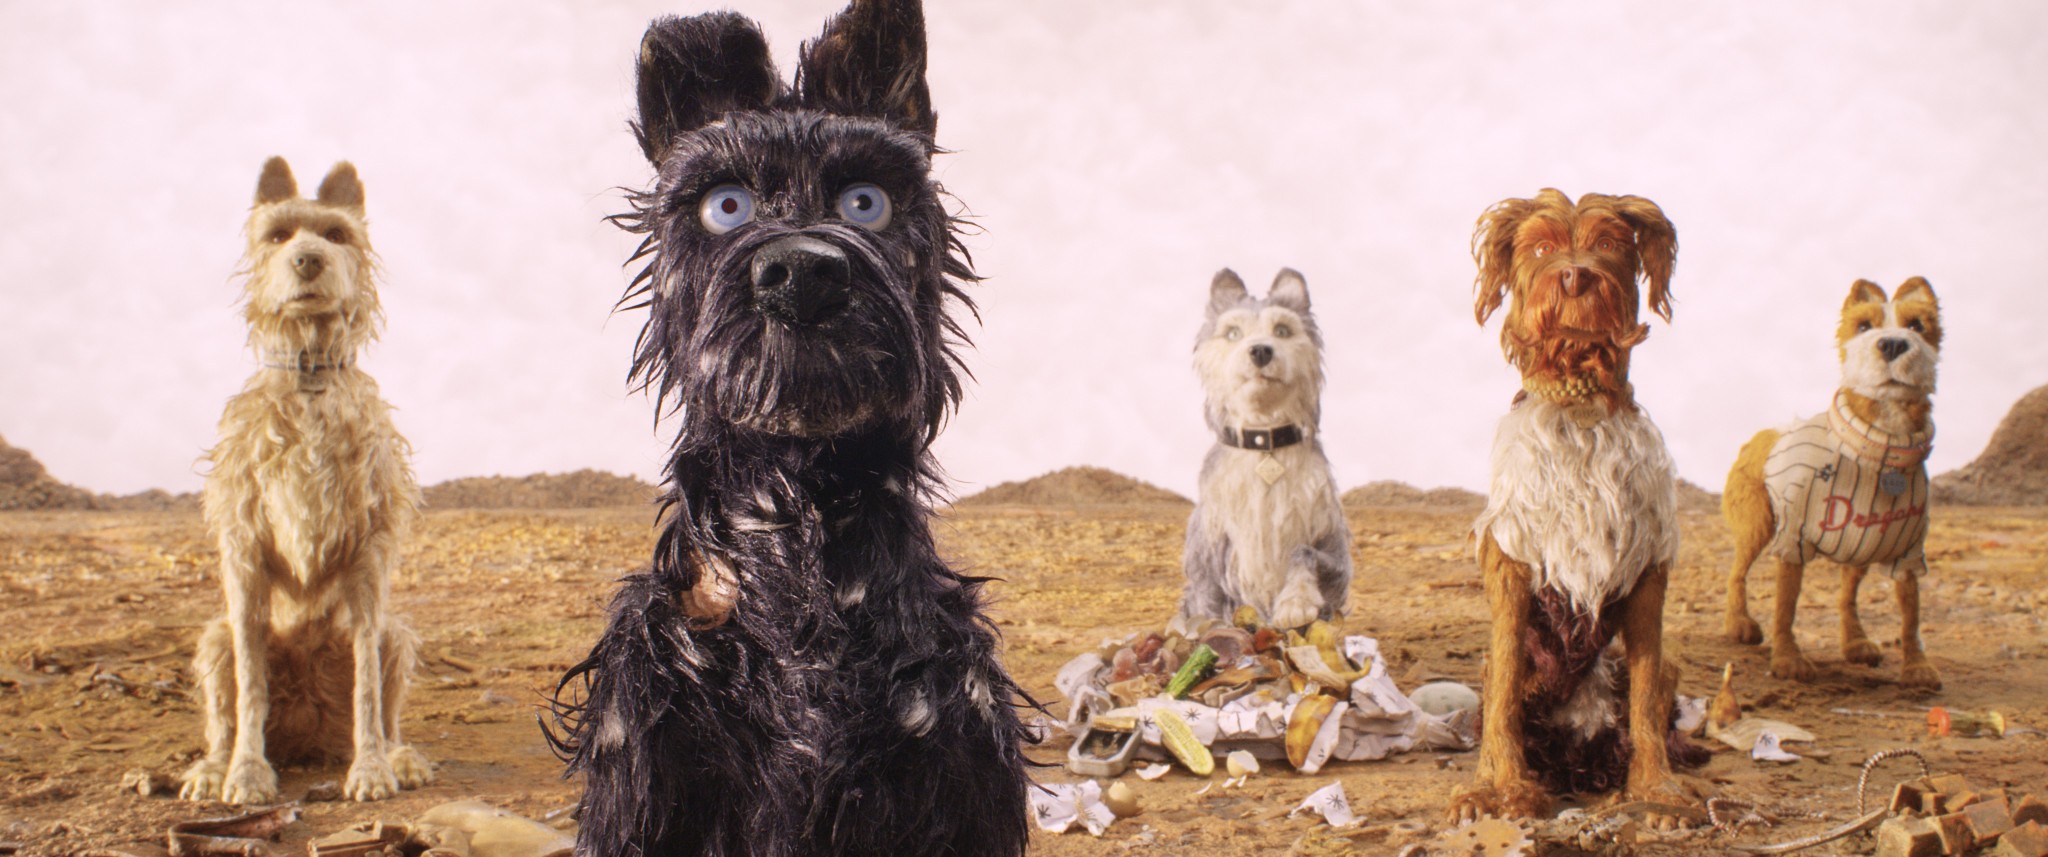 cine para niños, crítica de cine, la Isla de perros, Wes Anderson